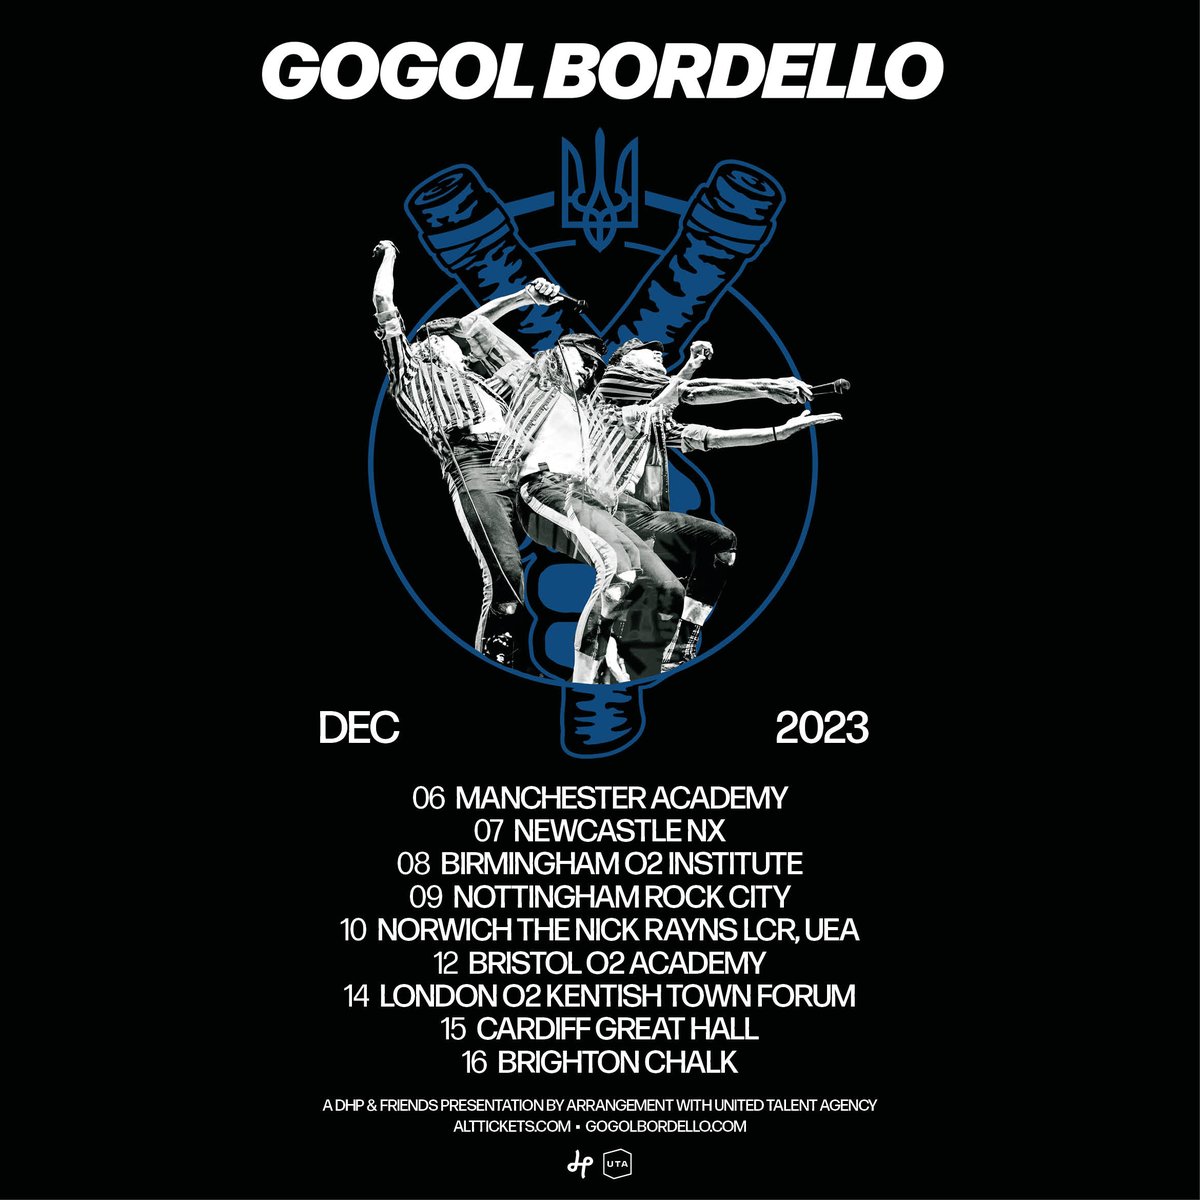 Gogol Bordello UK Tour 2023 announced 👊👊👊 Tickets go on sale Fri, 2 June at 10am local venue time: gogolbordello.com